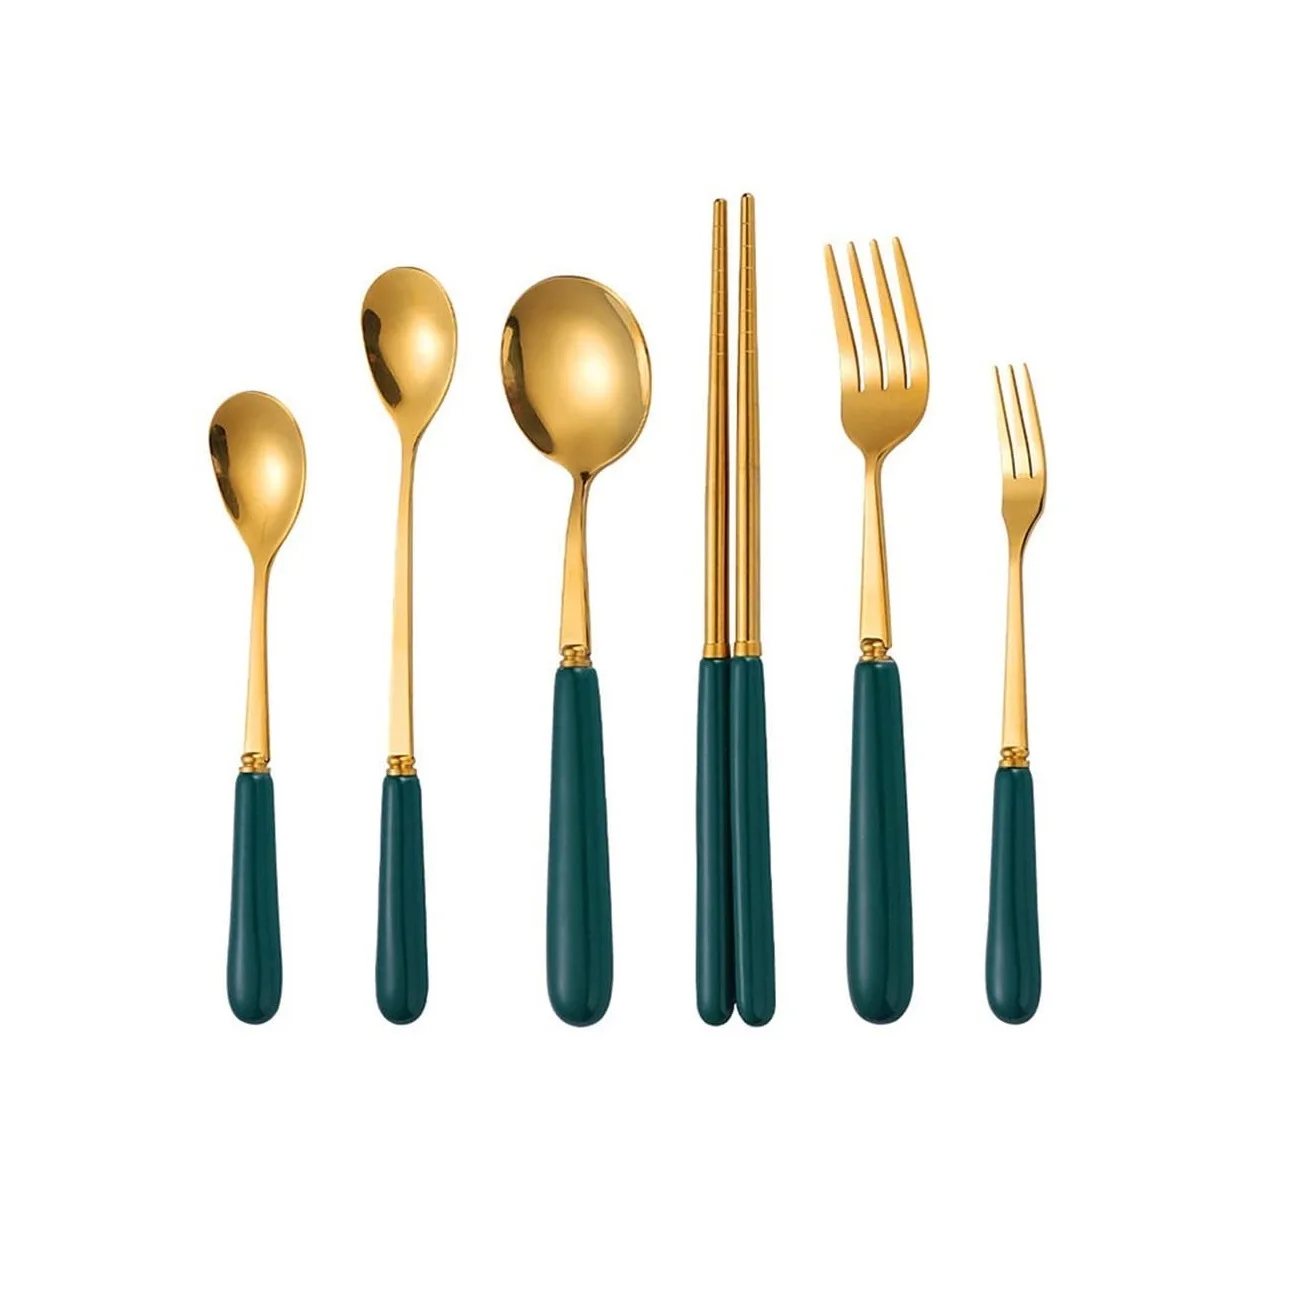 

Elegant Stainless Steel Cutlery Sets Flatware Set with Porcelain Handle Spoon Fork Knife Chopsticks Green Glazed Ceramic Grip